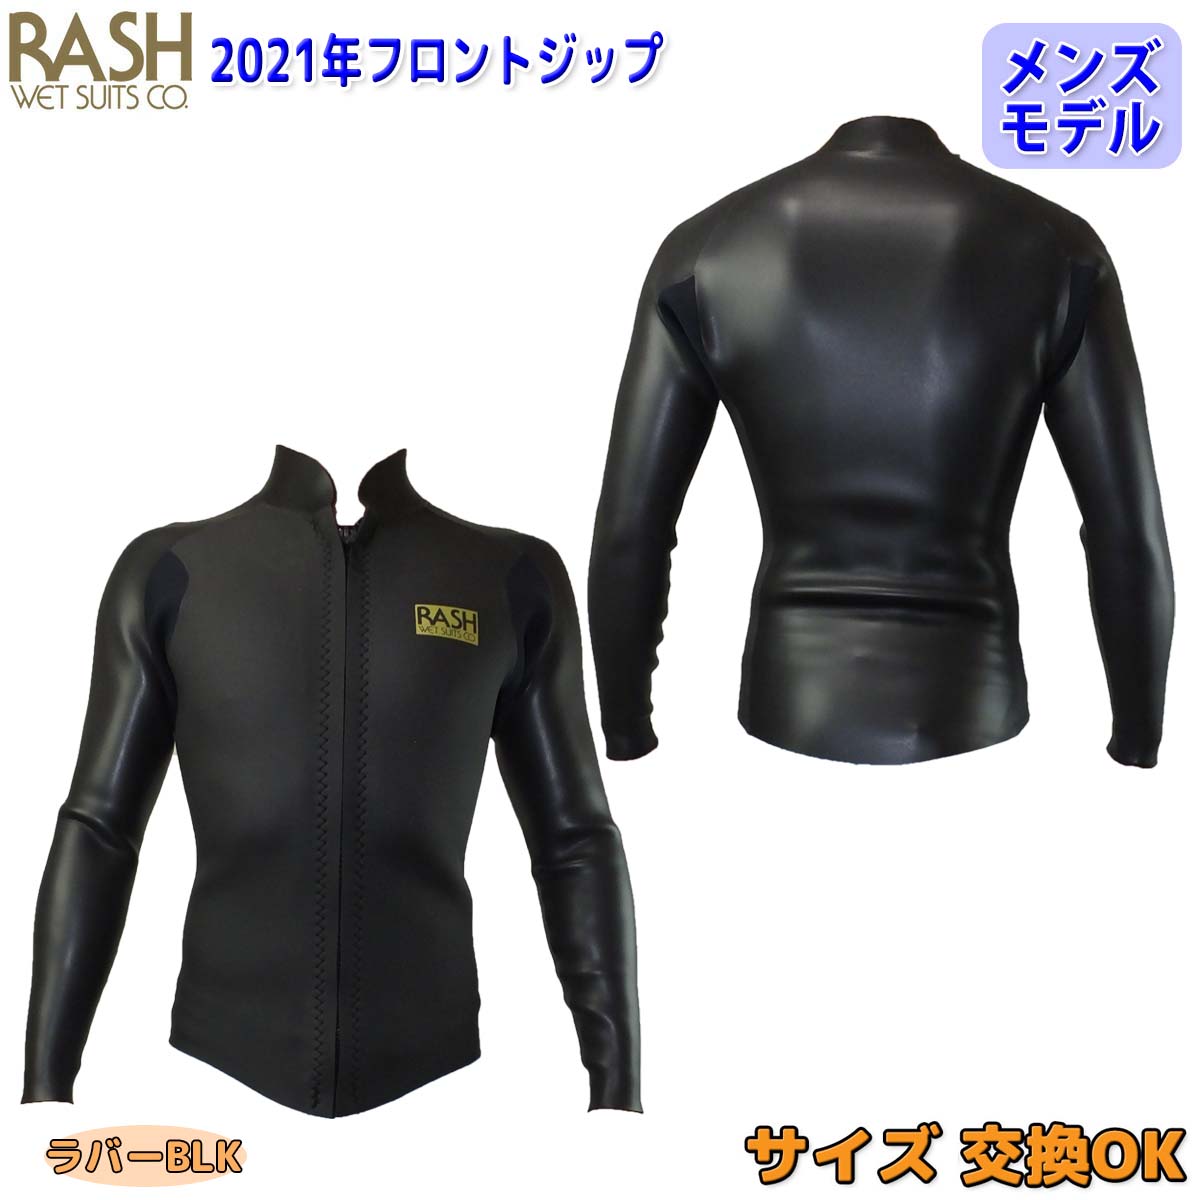 21 RASH ラッシュ 長袖タッパー ウェットスーツ ウエットスーツ フロントジップ 2mm バリュー 春夏用 メンズモデル ウェット 2021年 日本正規品